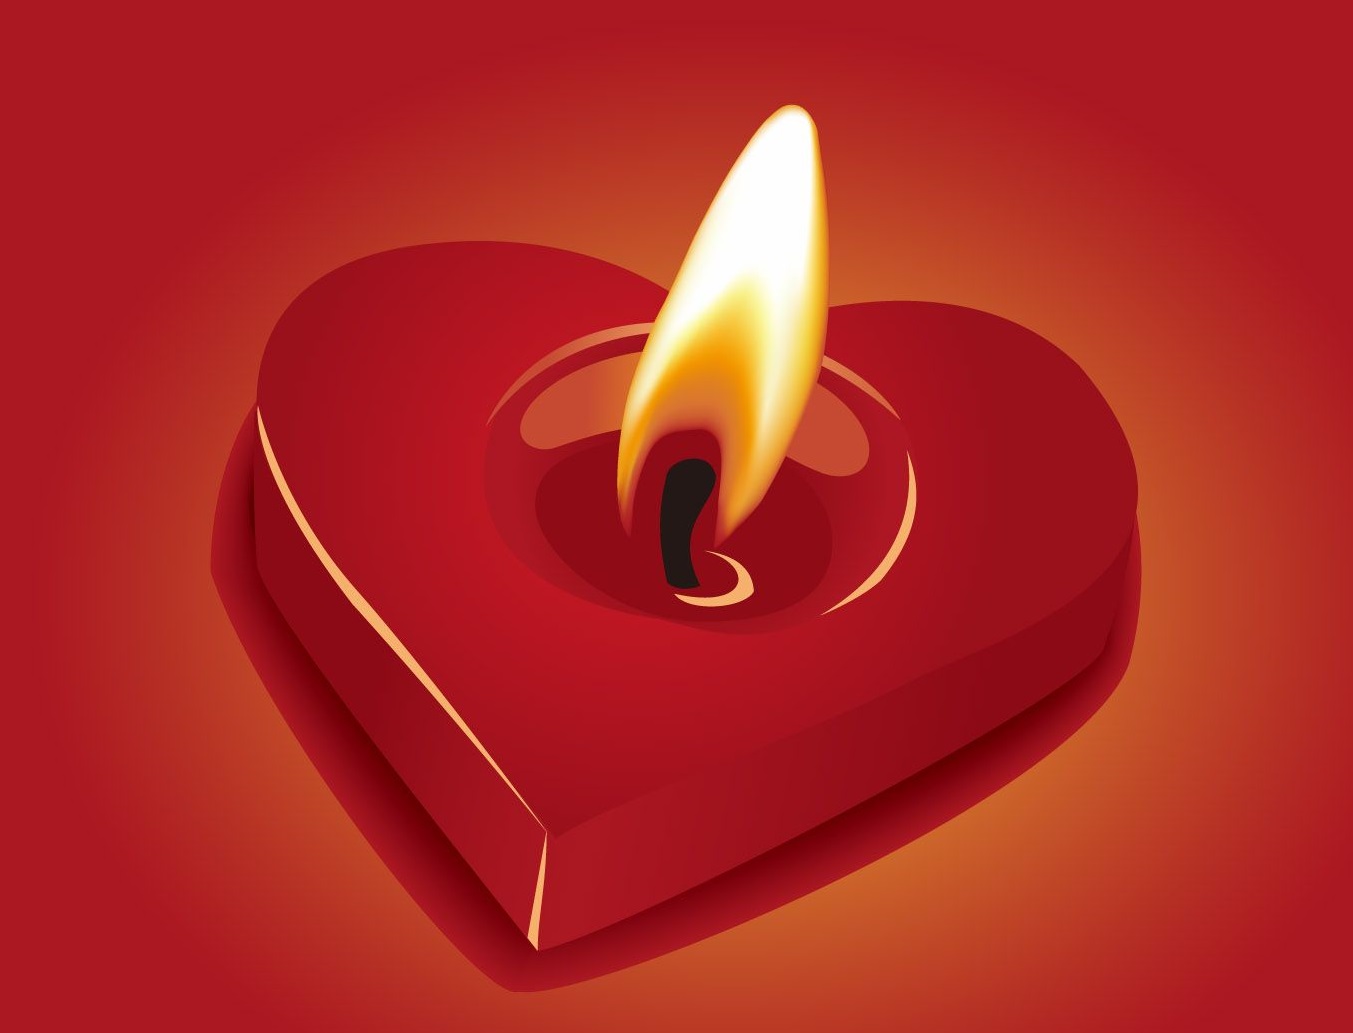 kjv-image-heart-flame